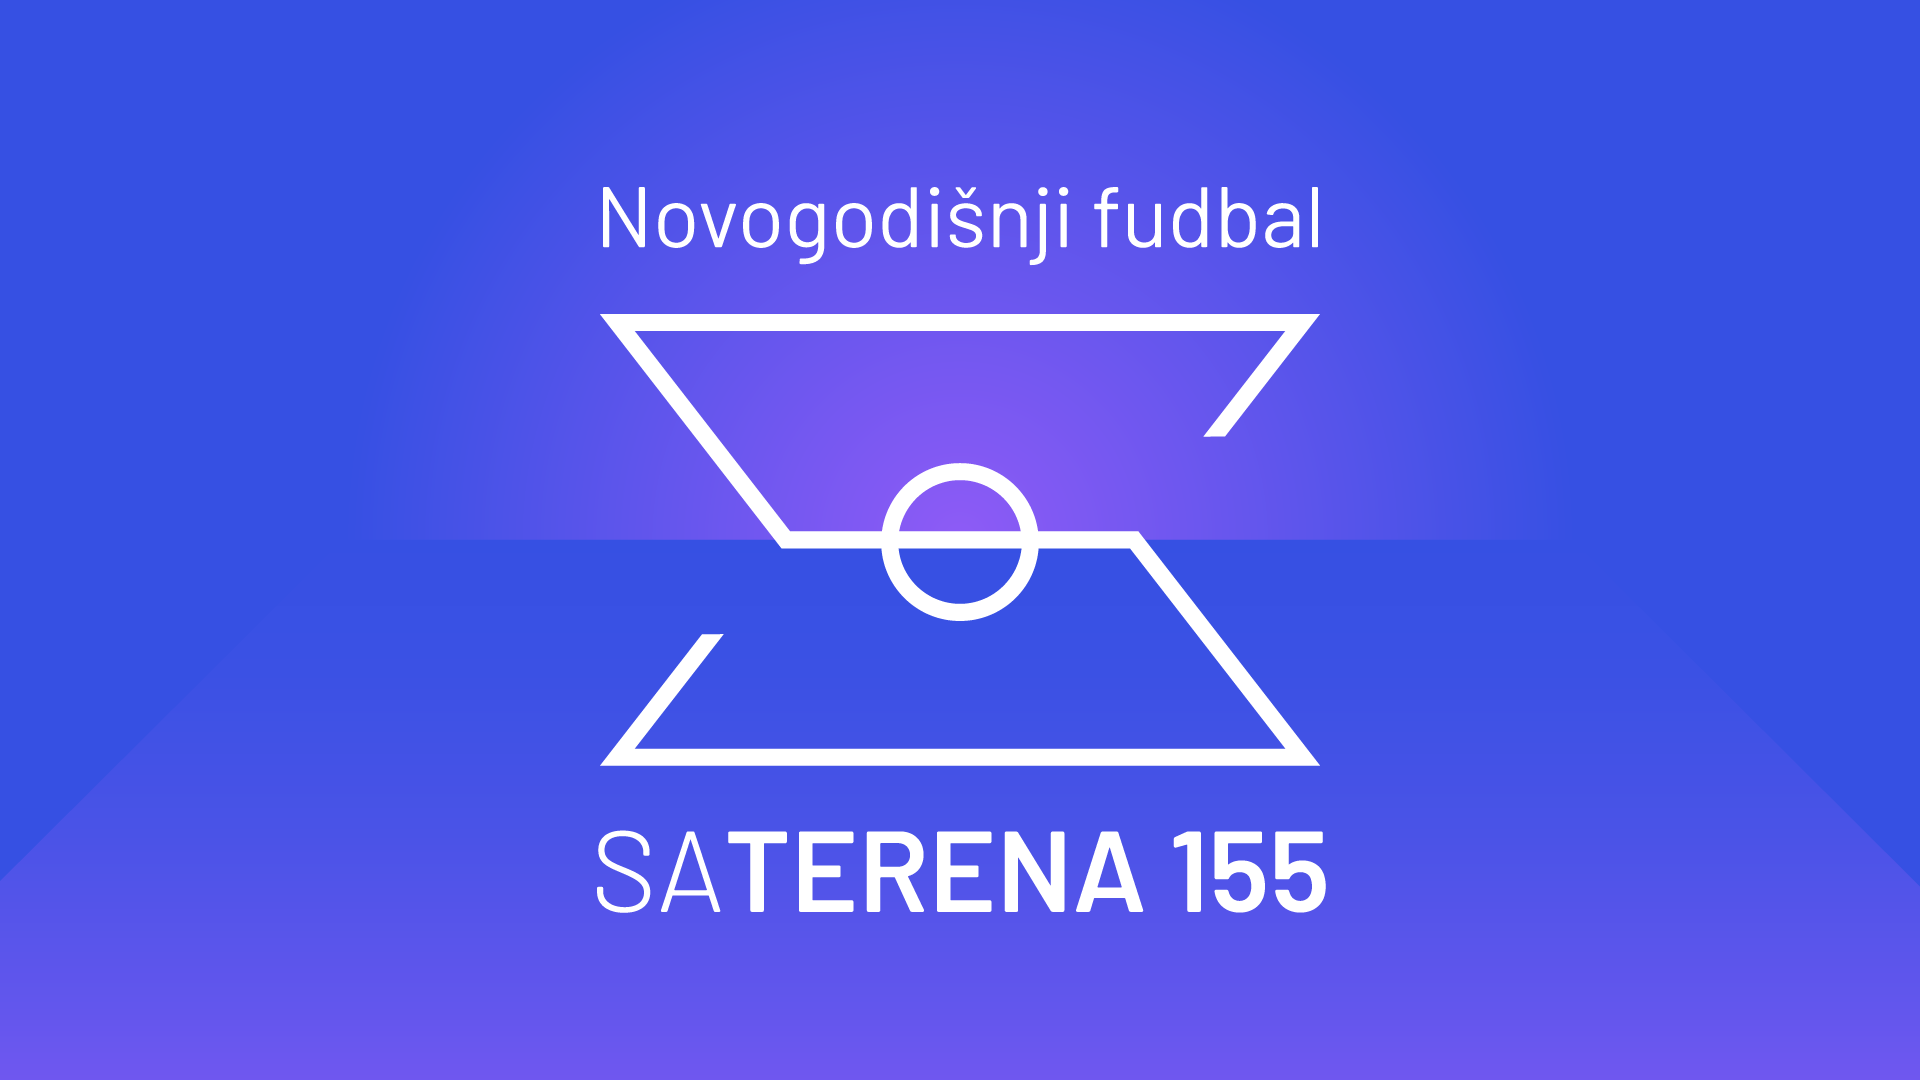 Sa terena 155: Novogodišnji fudbal